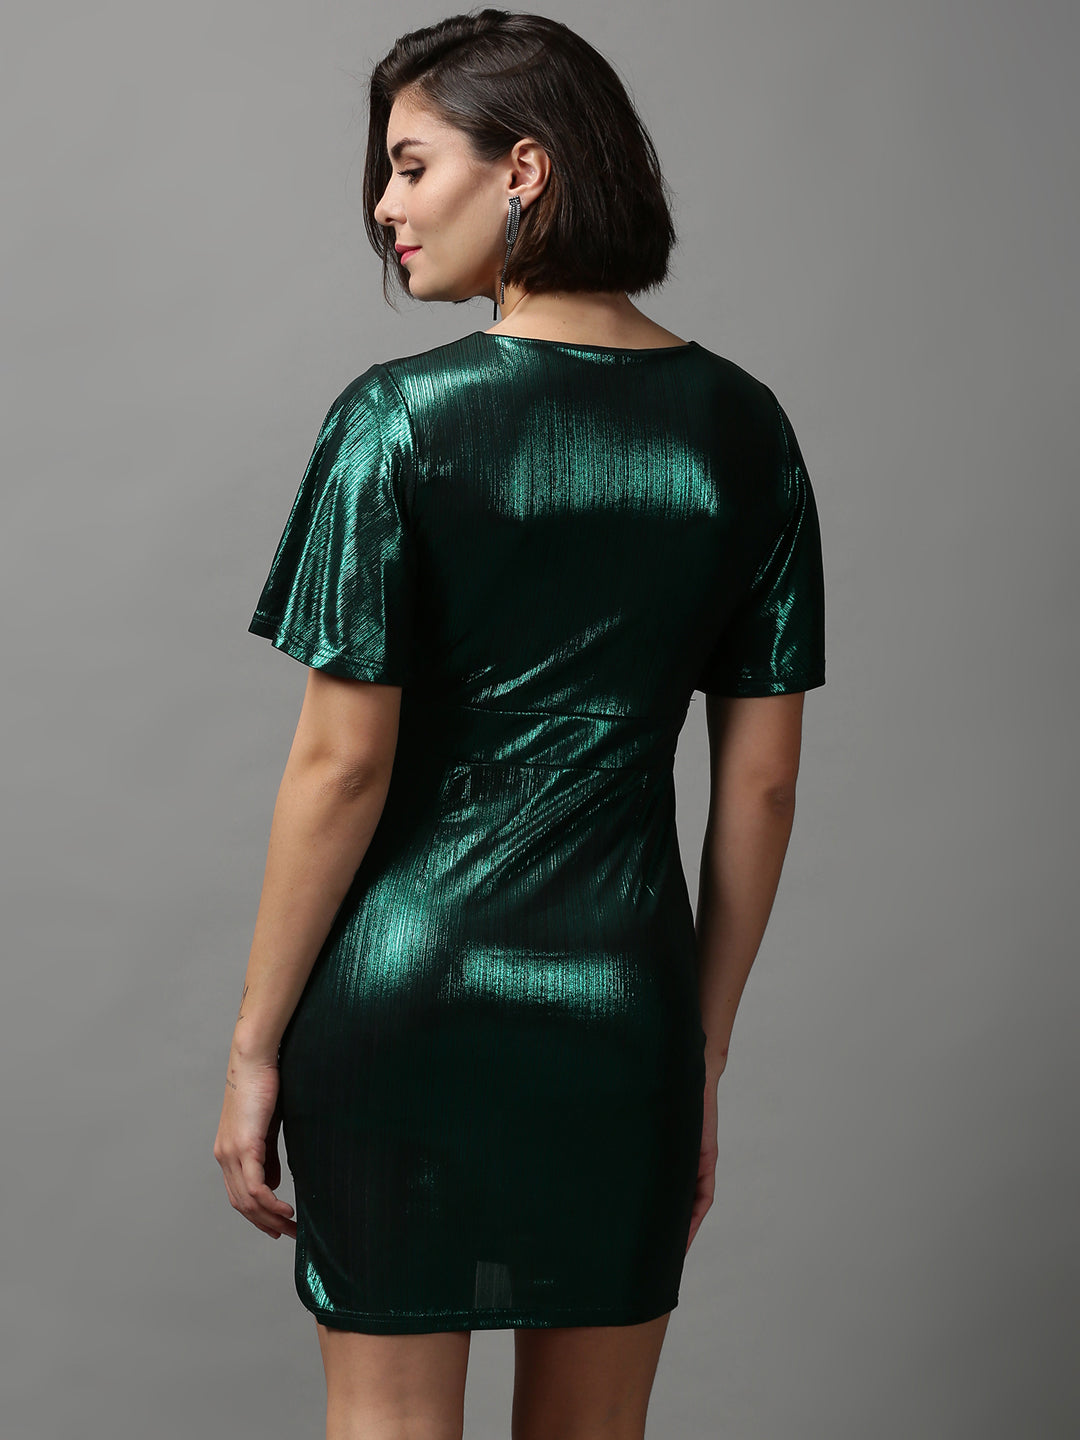 Women's Green Solid Sheath Dress